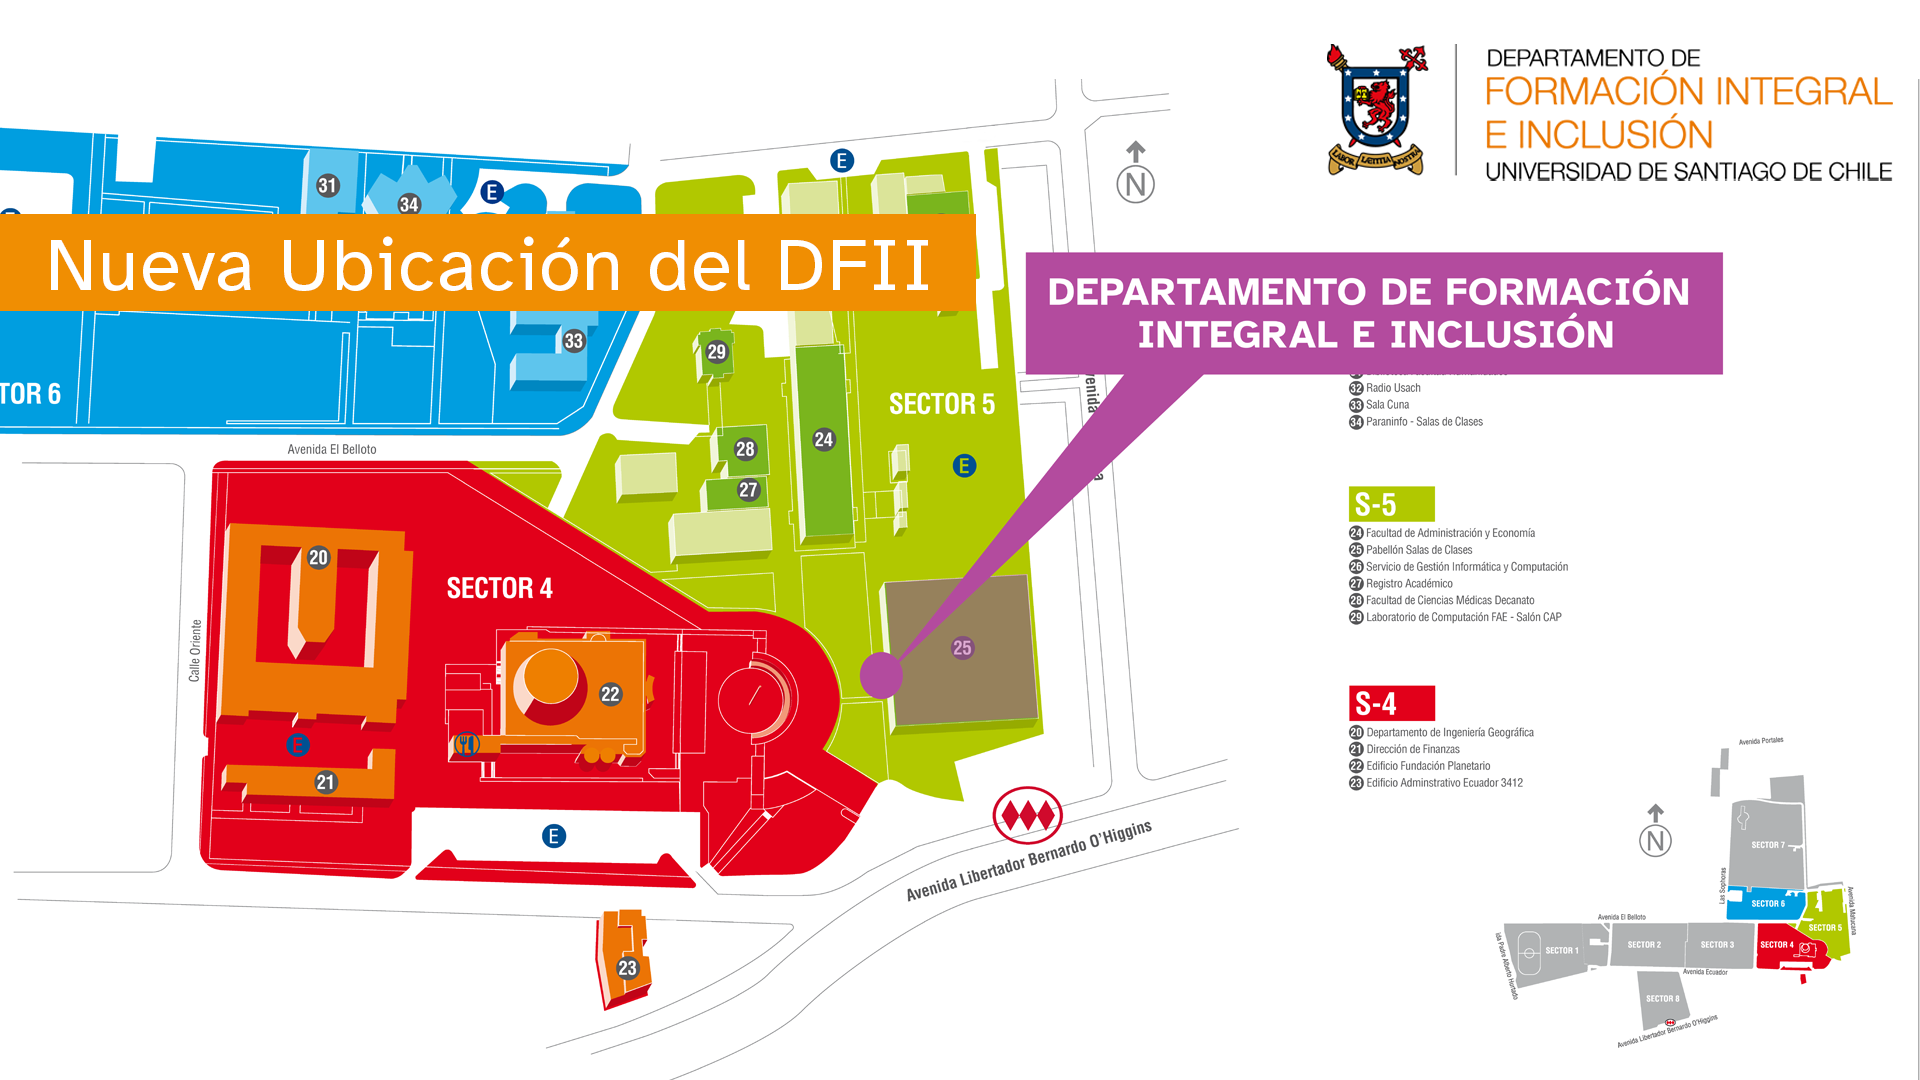 Mapa del campus USACH donde se destaca la ubicación del DFII en color morado.